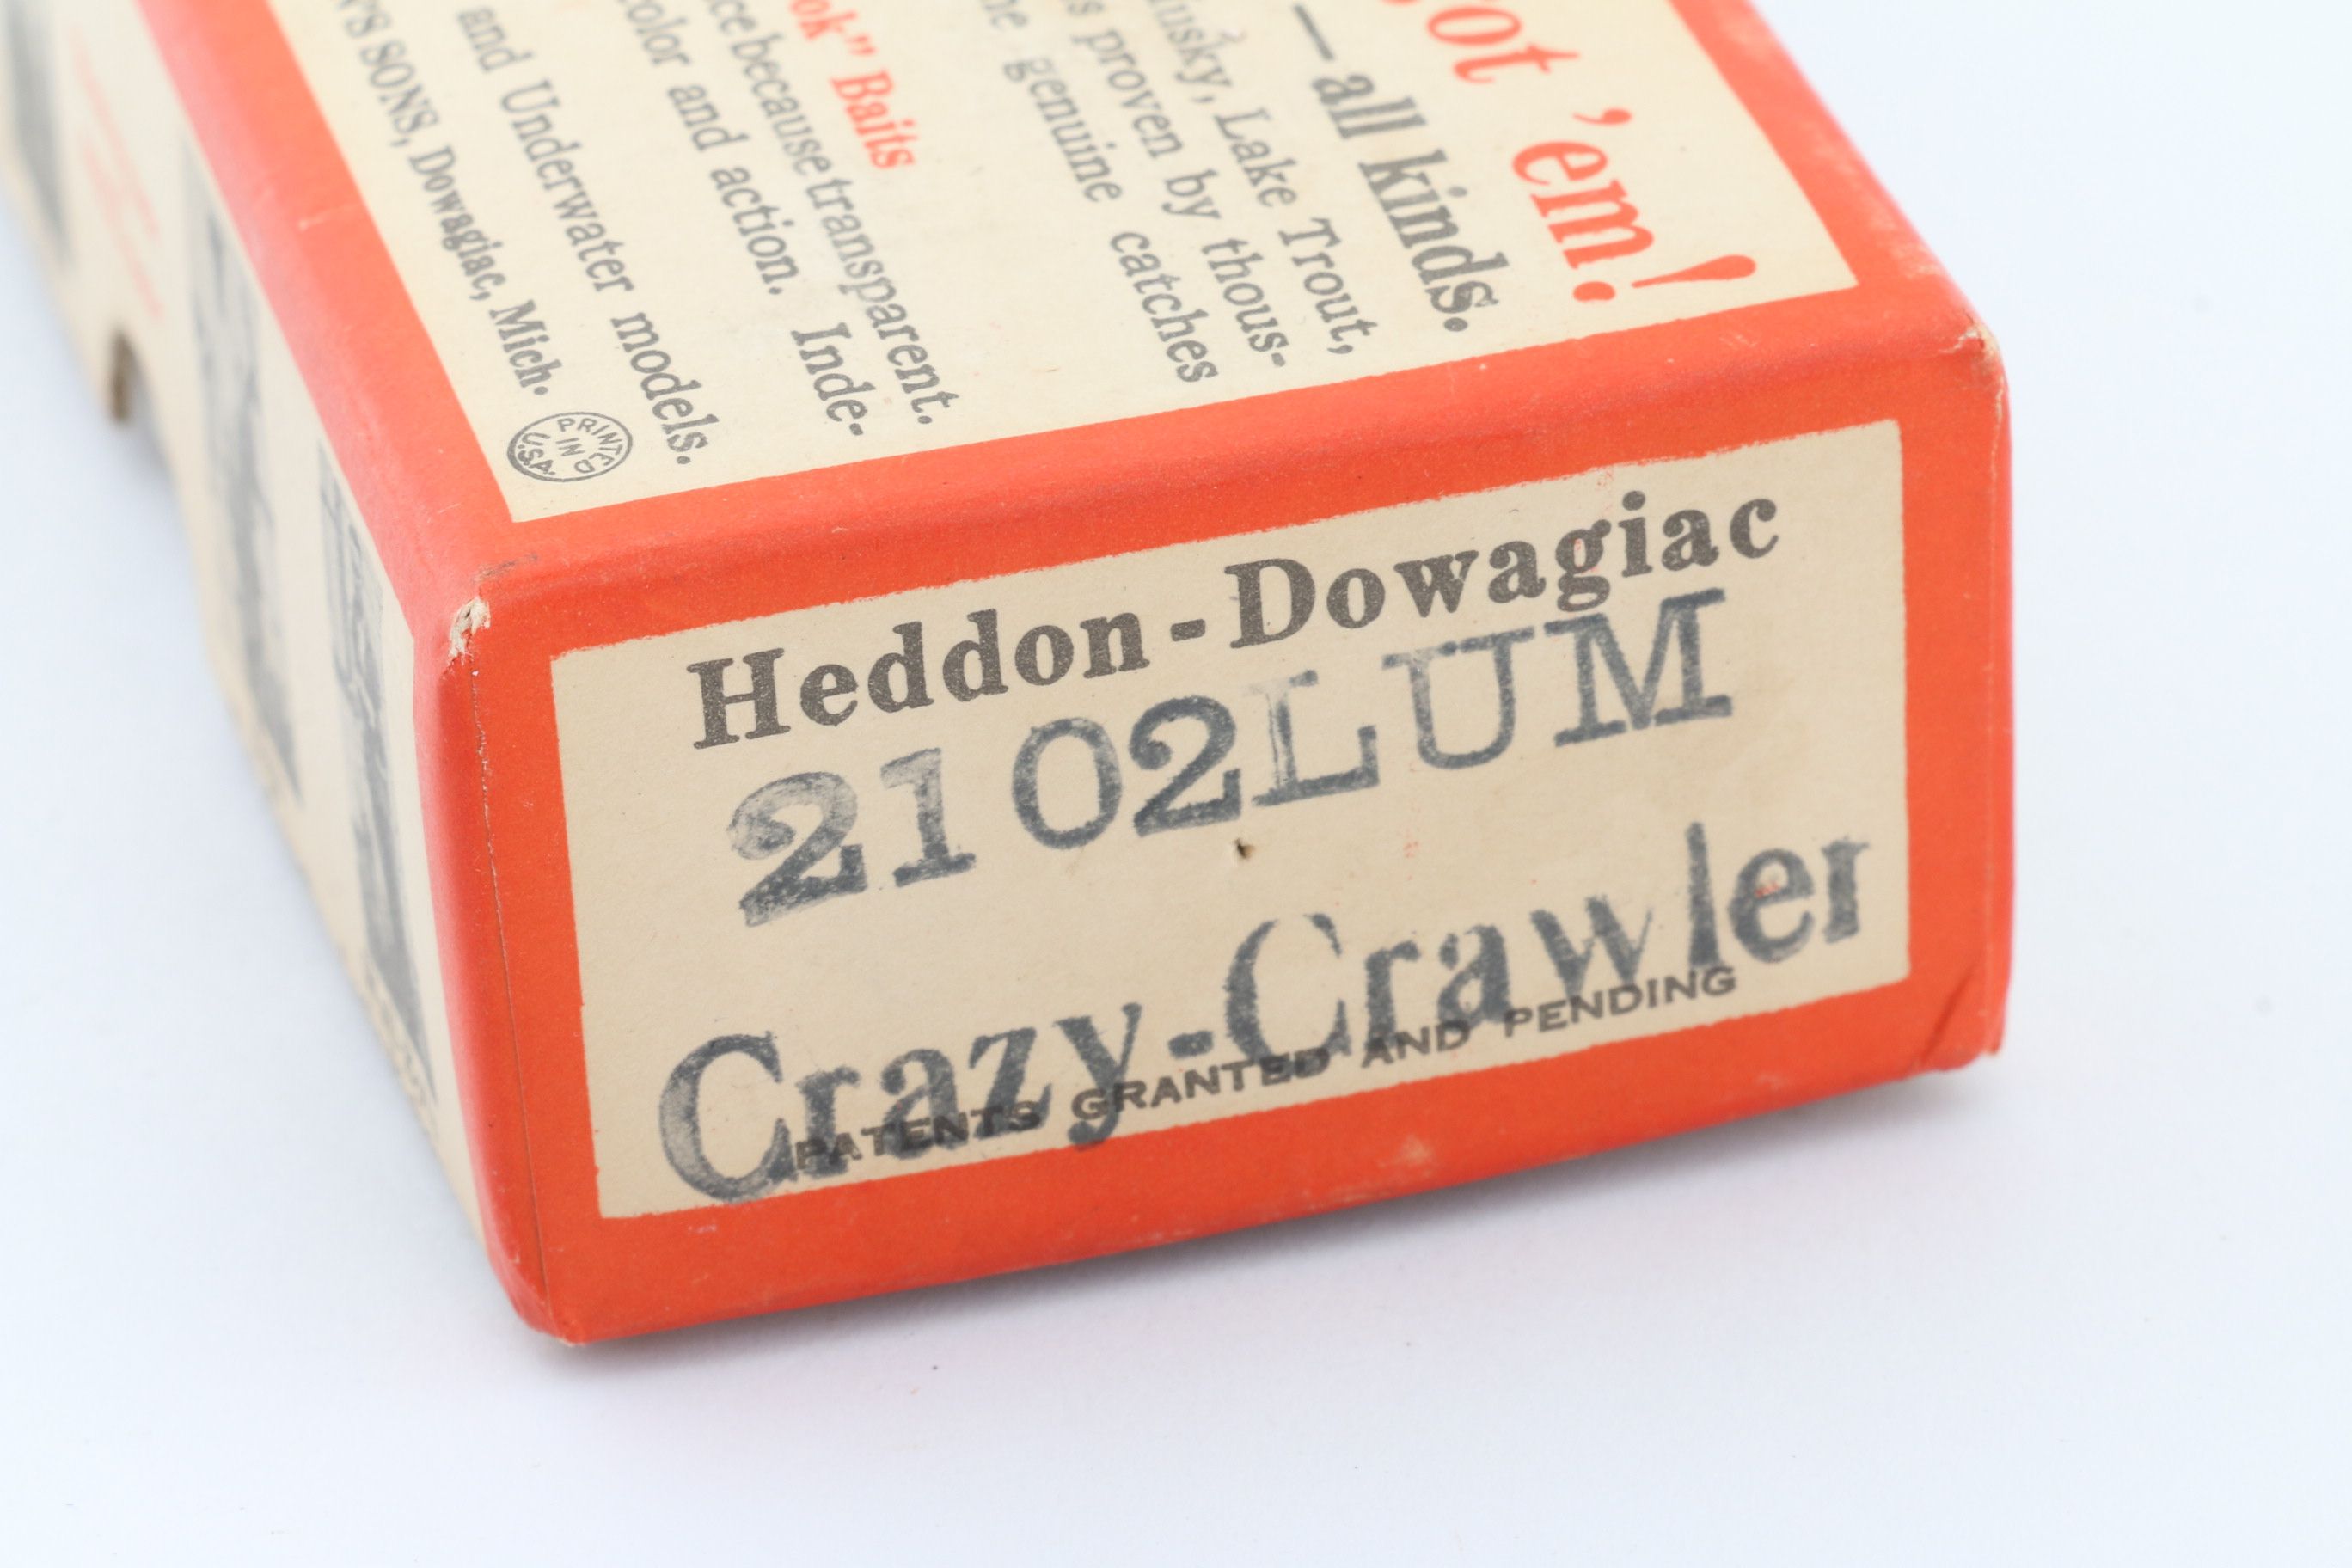 Heddon 2102lum Crazy Crawler